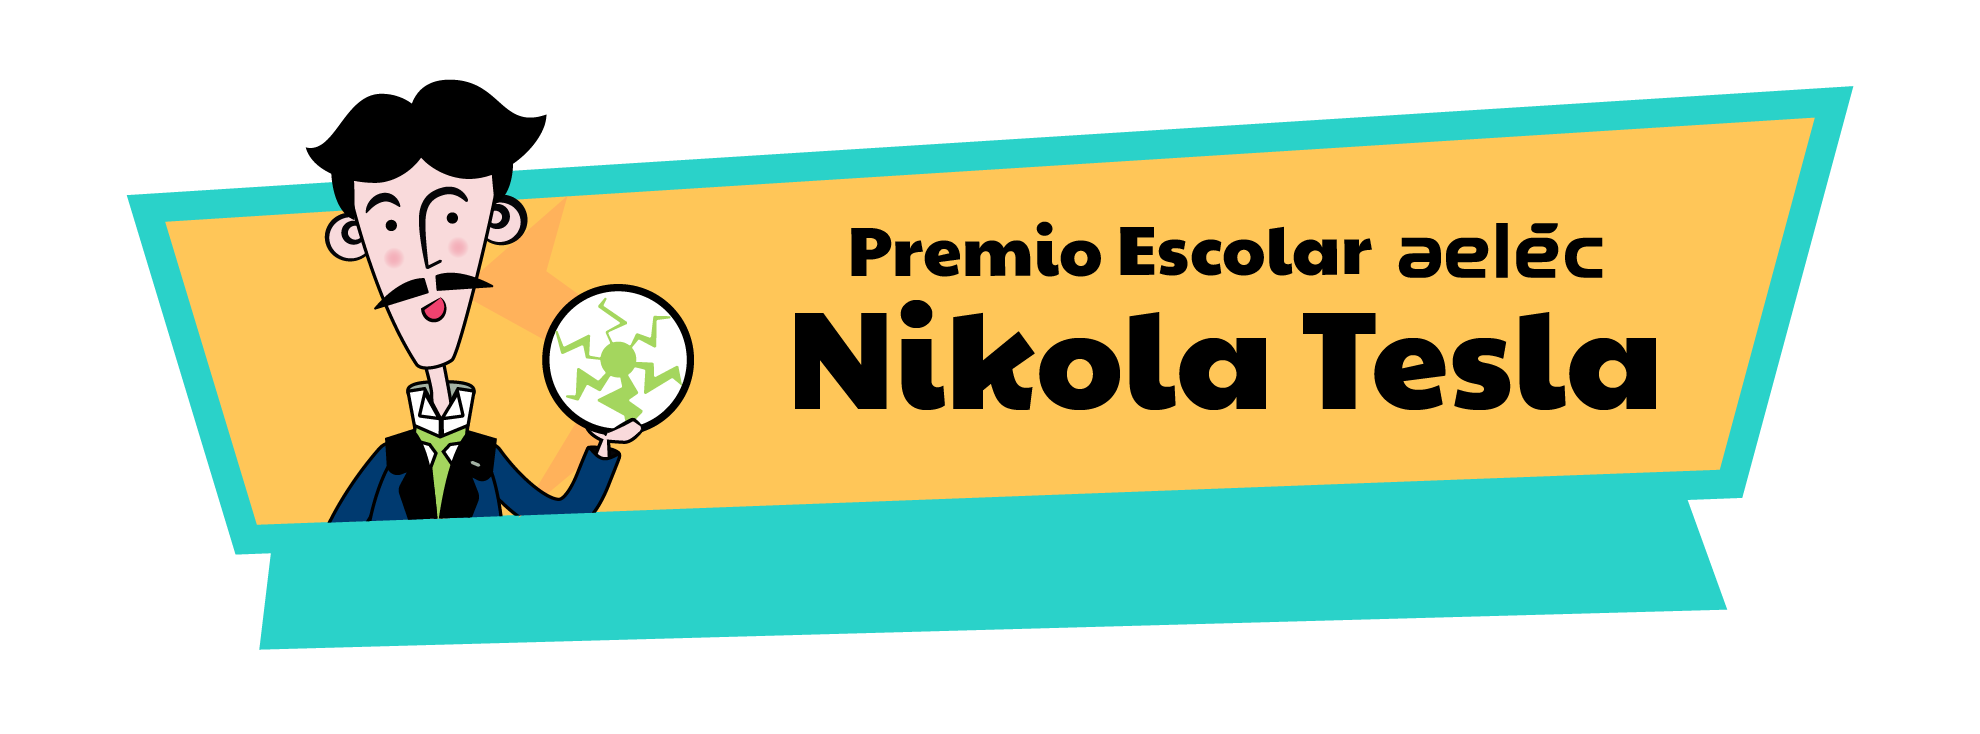 Premio Escolar aelec Nikola Tesla